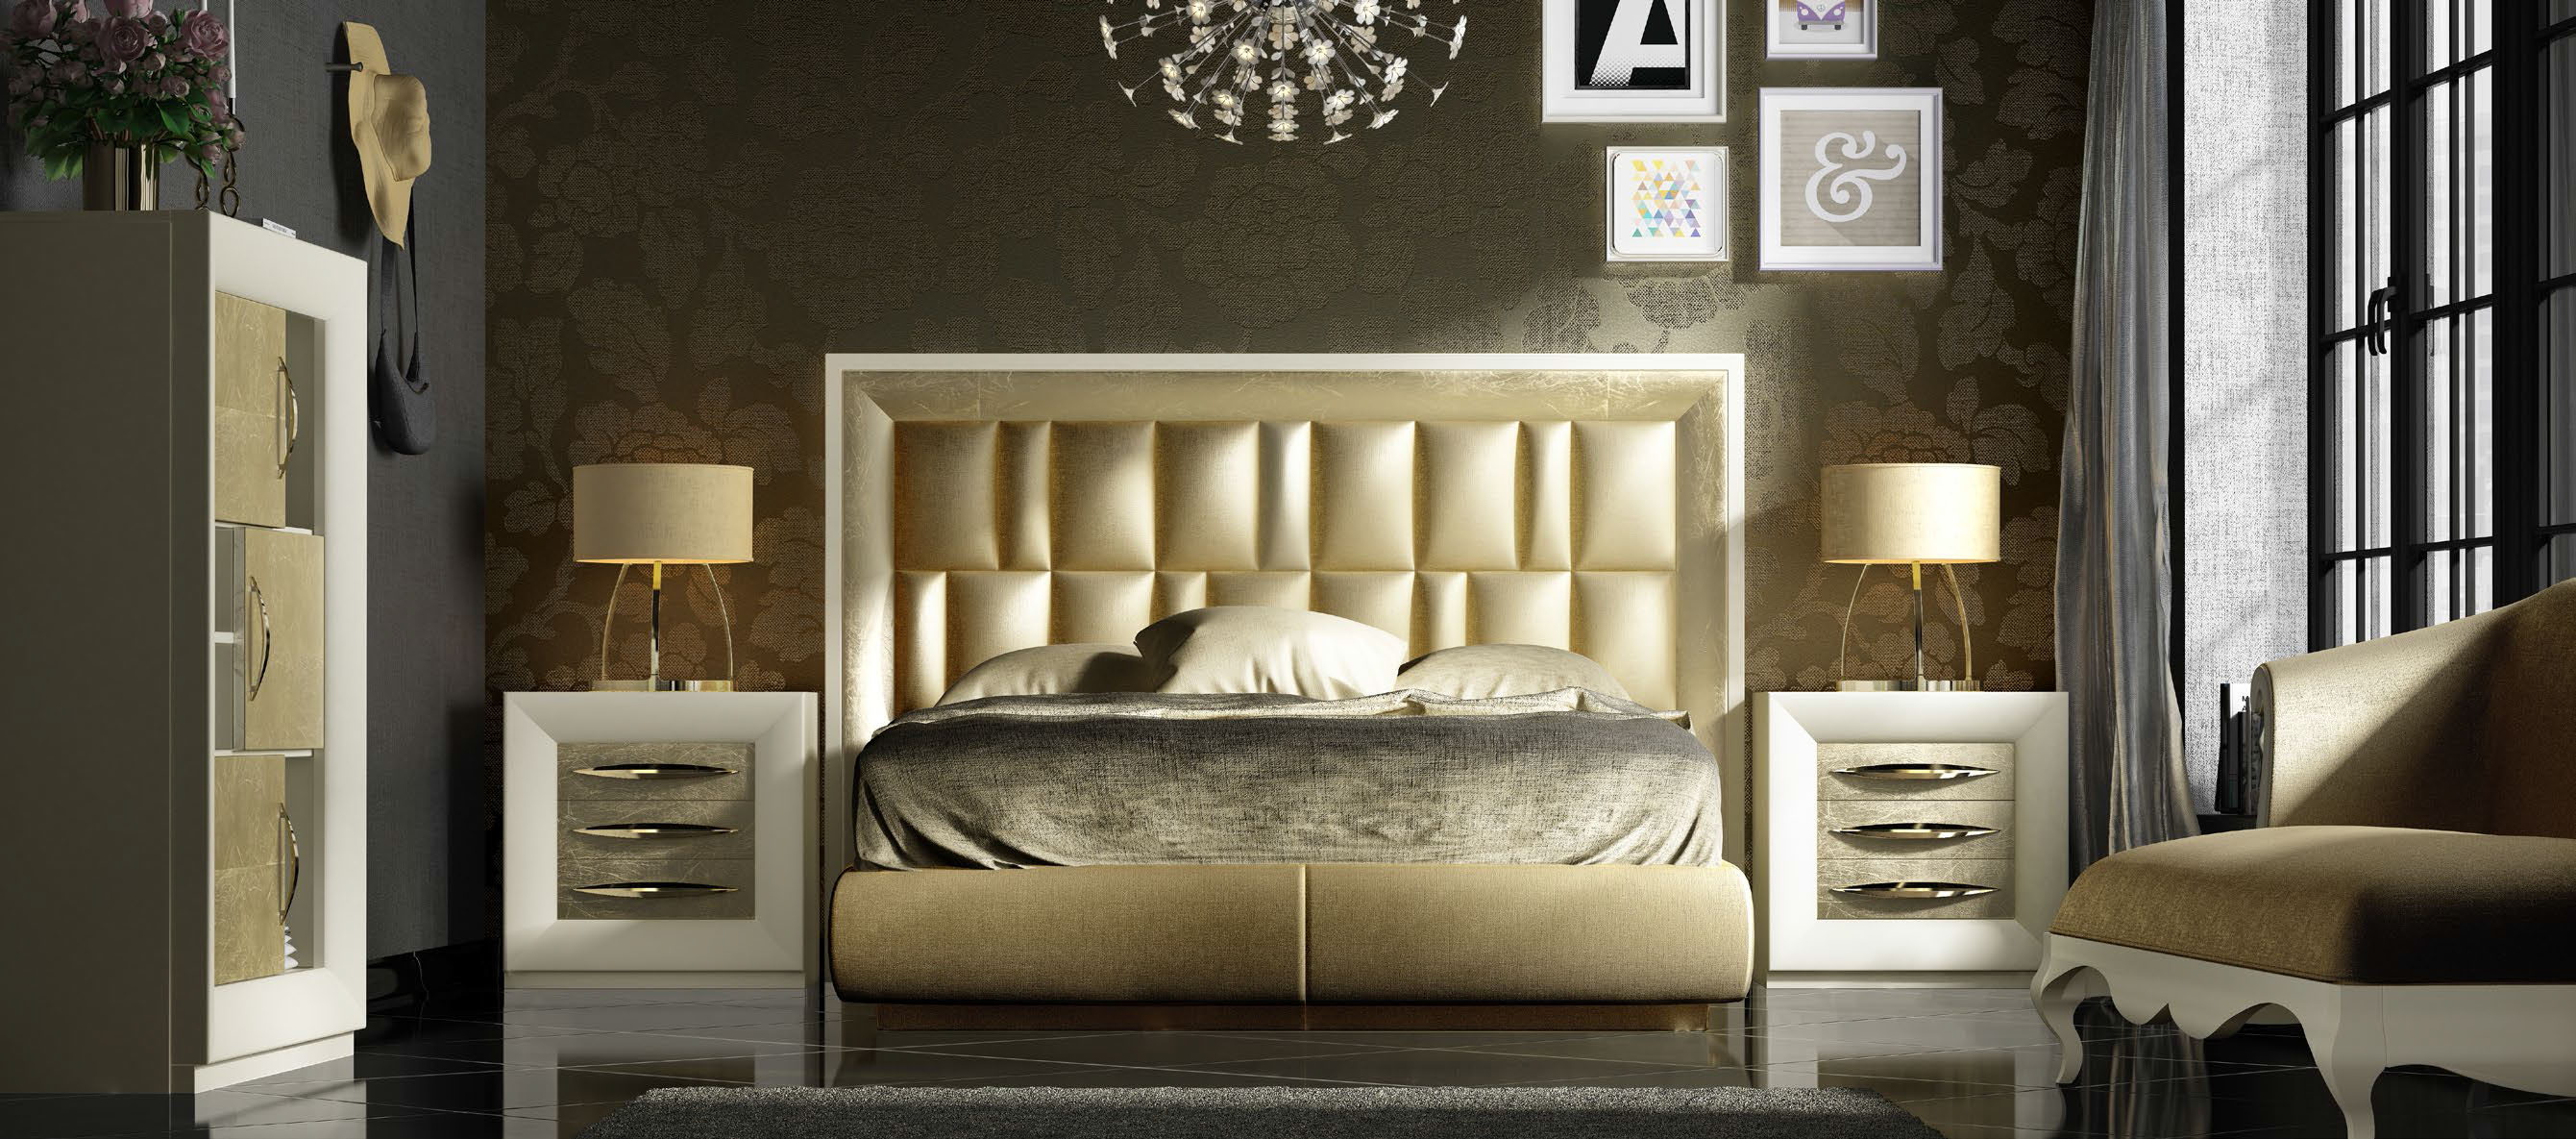 Brands Franco Furniture Avanty Bedrooms, Spain DOR 118